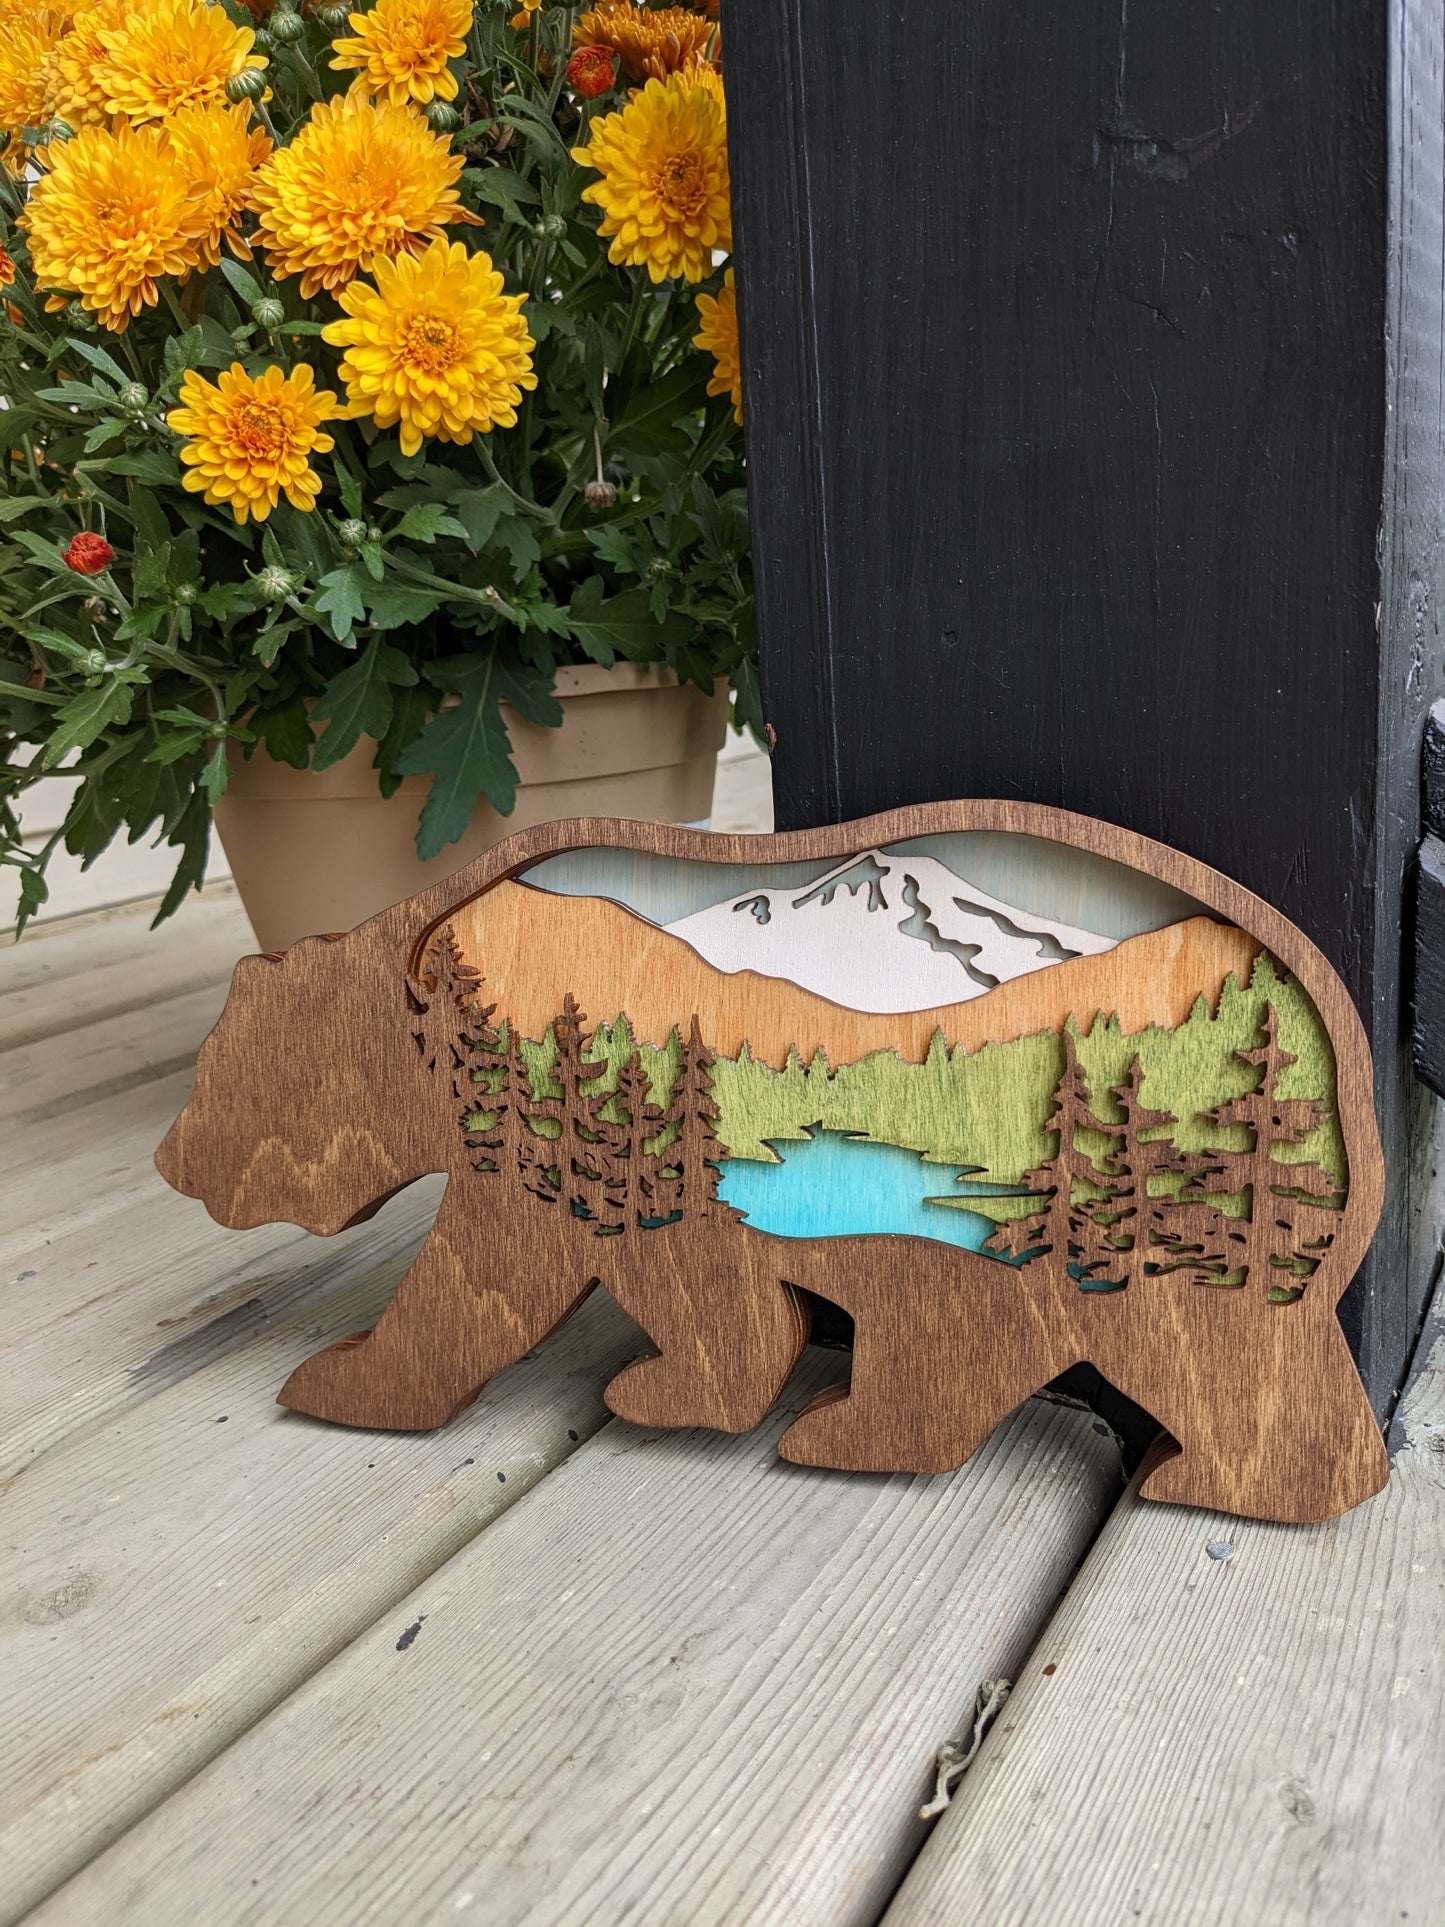 Bear shaped layered mountain scene / 3D Layered Wood Bear Artwork 50.00